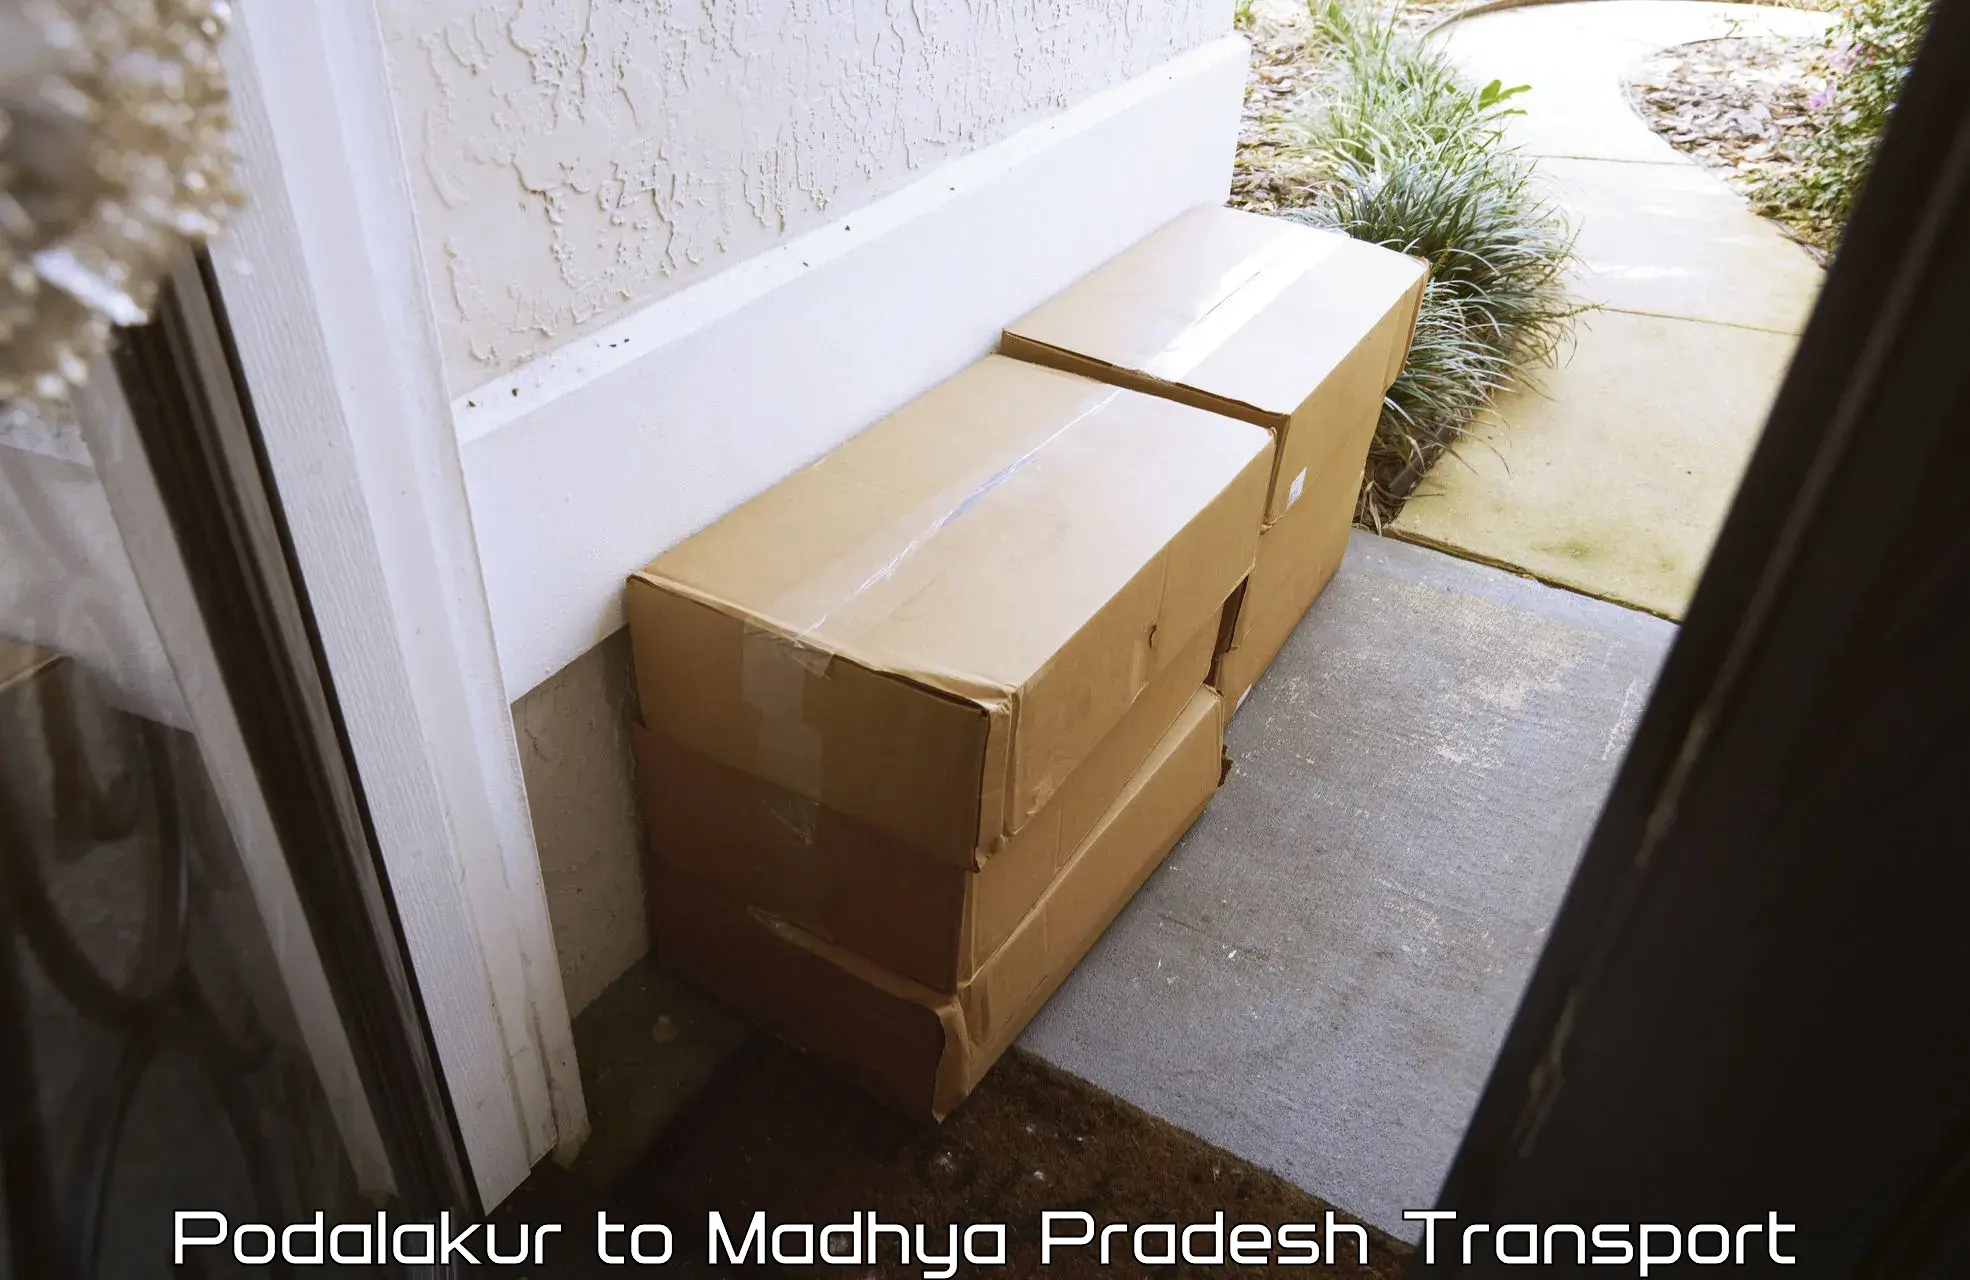 Pick up transport service Podalakur to Majhgawa